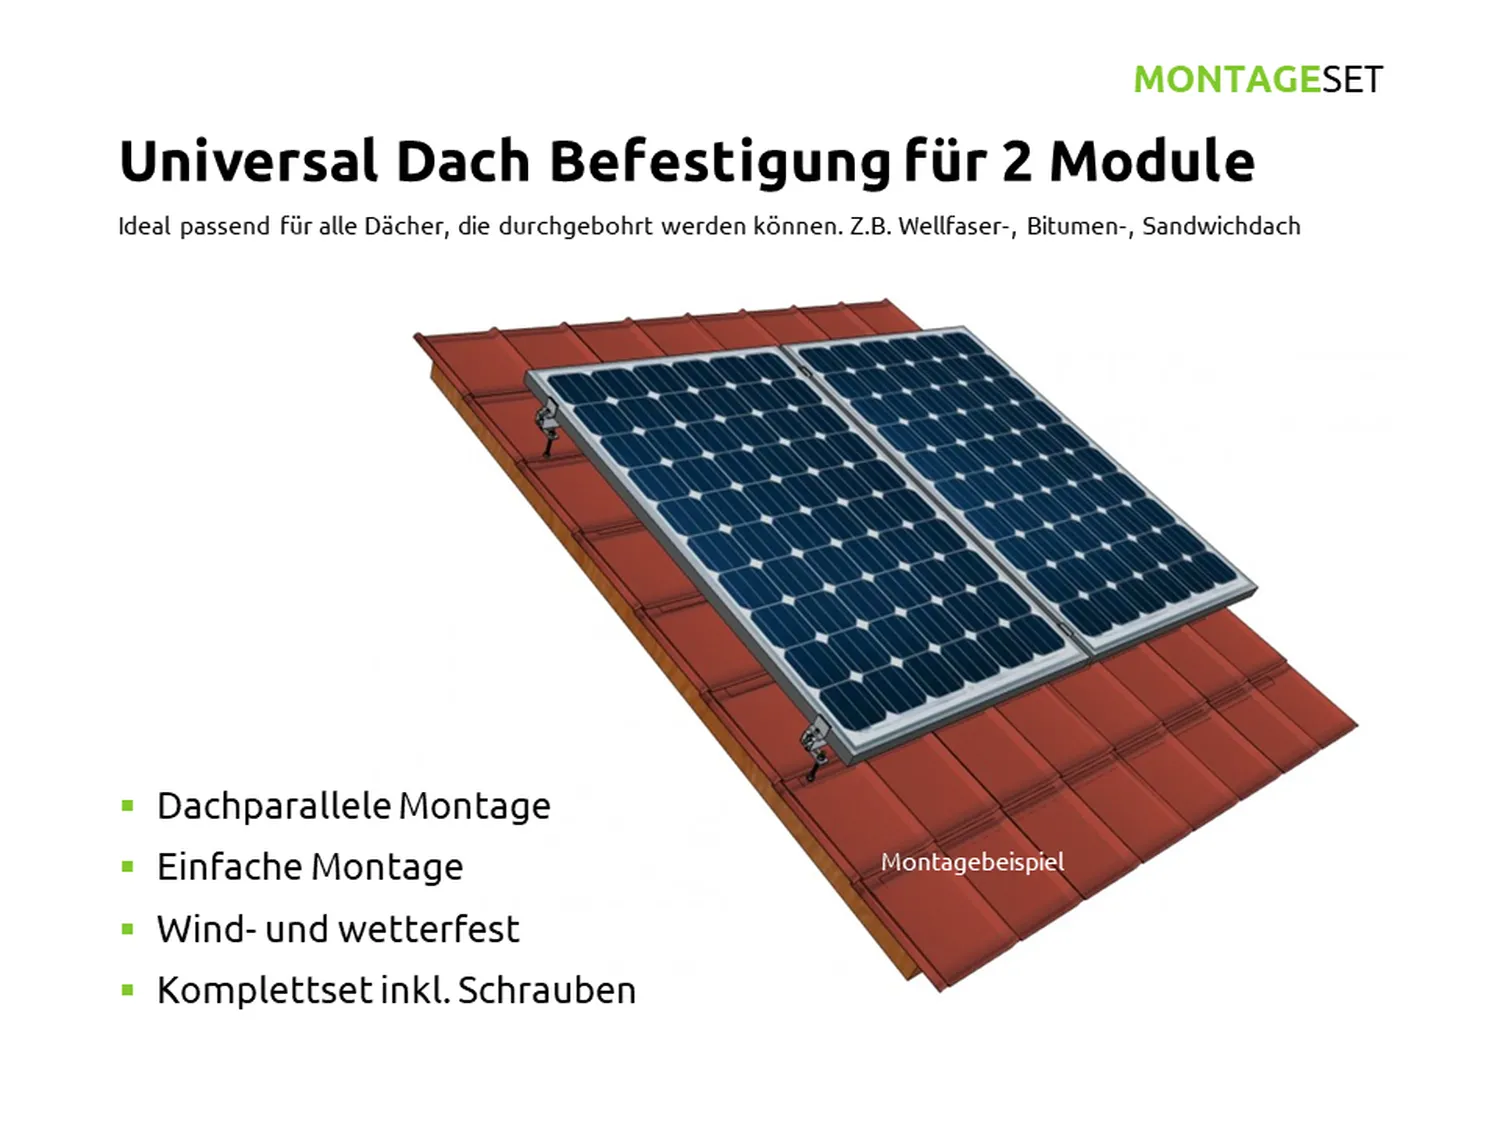 Universal Dach Befestigung für 2 PV Module